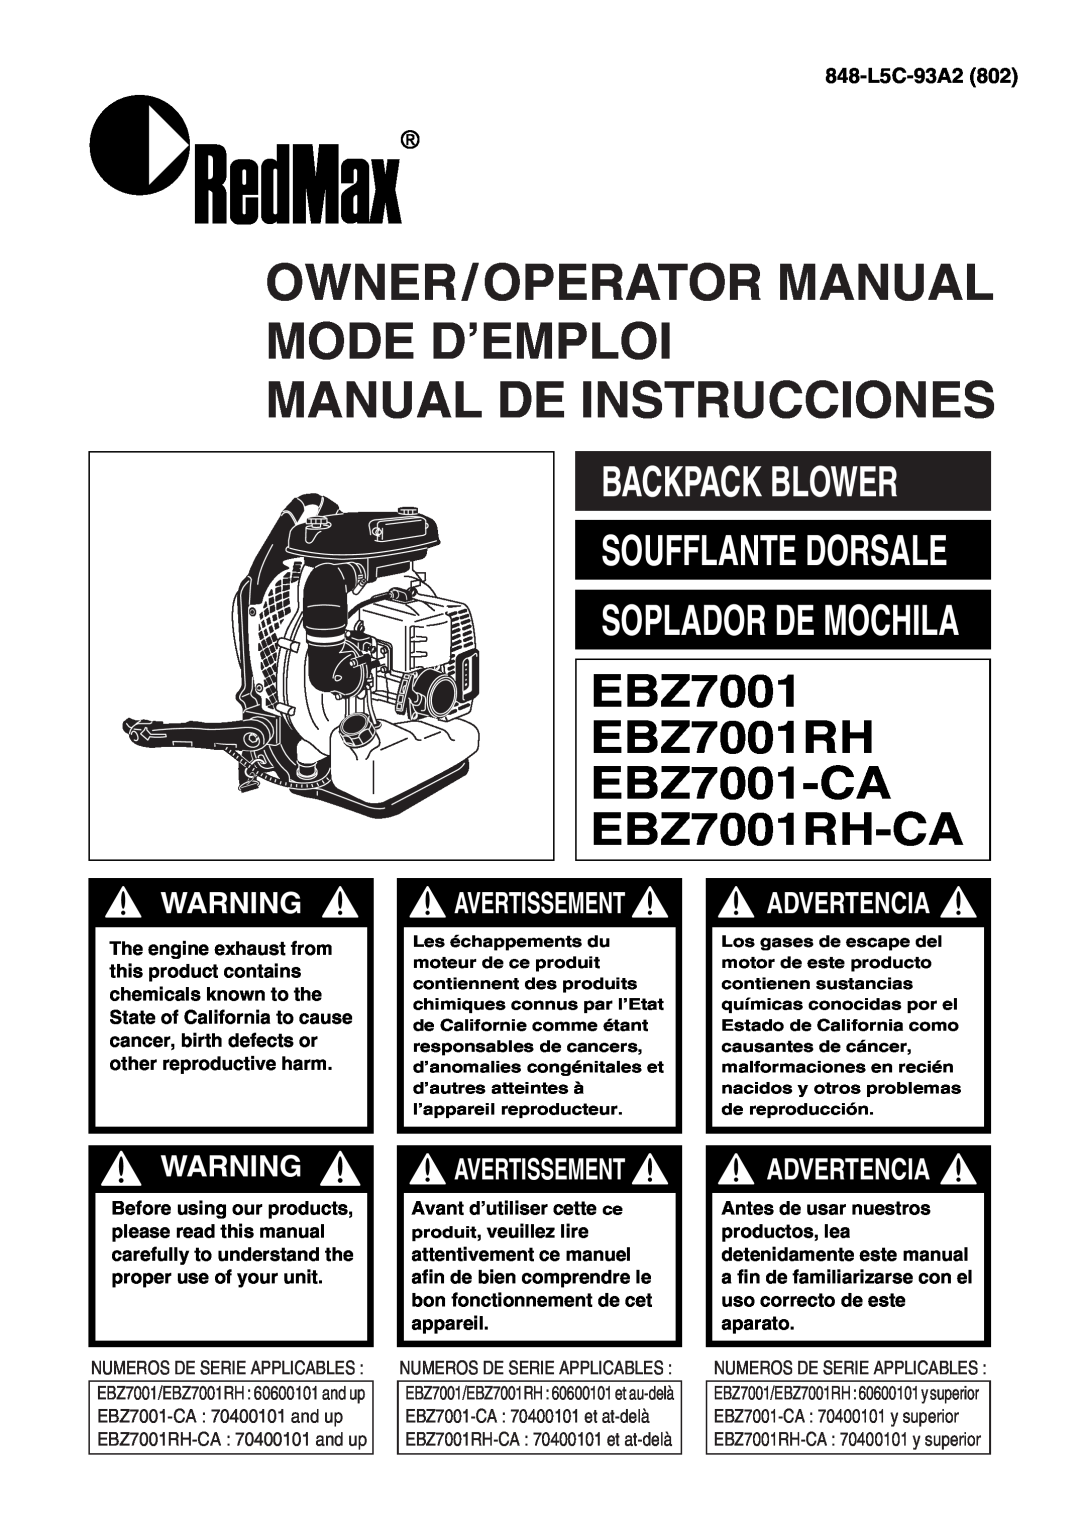 RedMax EBZ7001-CA manual Backpack Blower, 848-L5C-93A2, Owner/Operator Manual Mode D’Emploi Manual De Instrucciones 